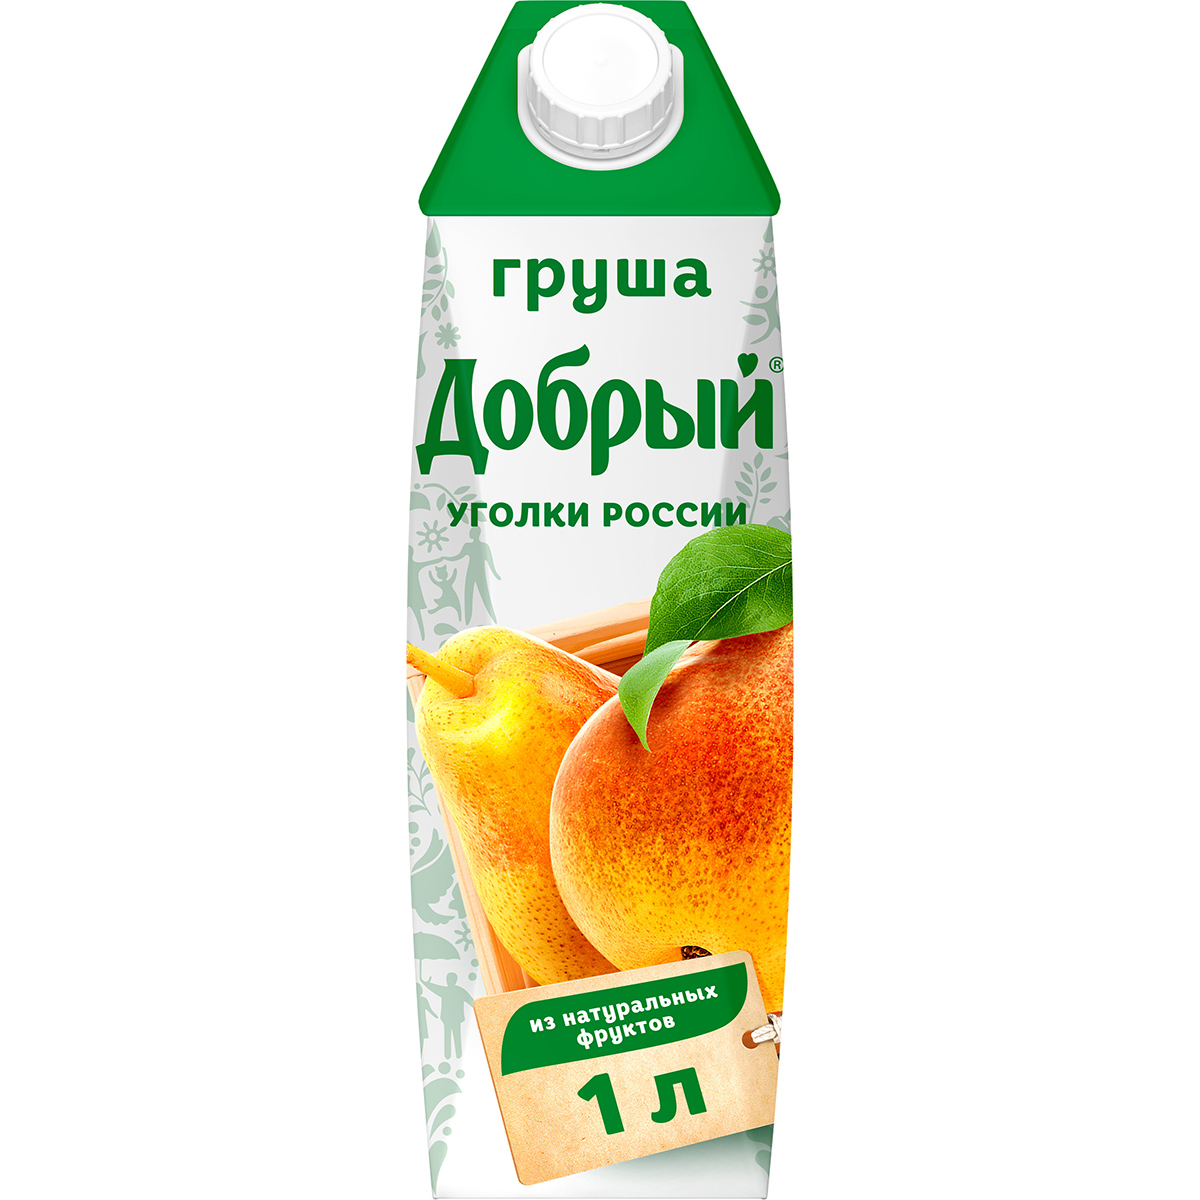 Нектар Добрый Уголки России Груша 1 л нектар rioba персиковый 0 25 литра 8 шт в уп